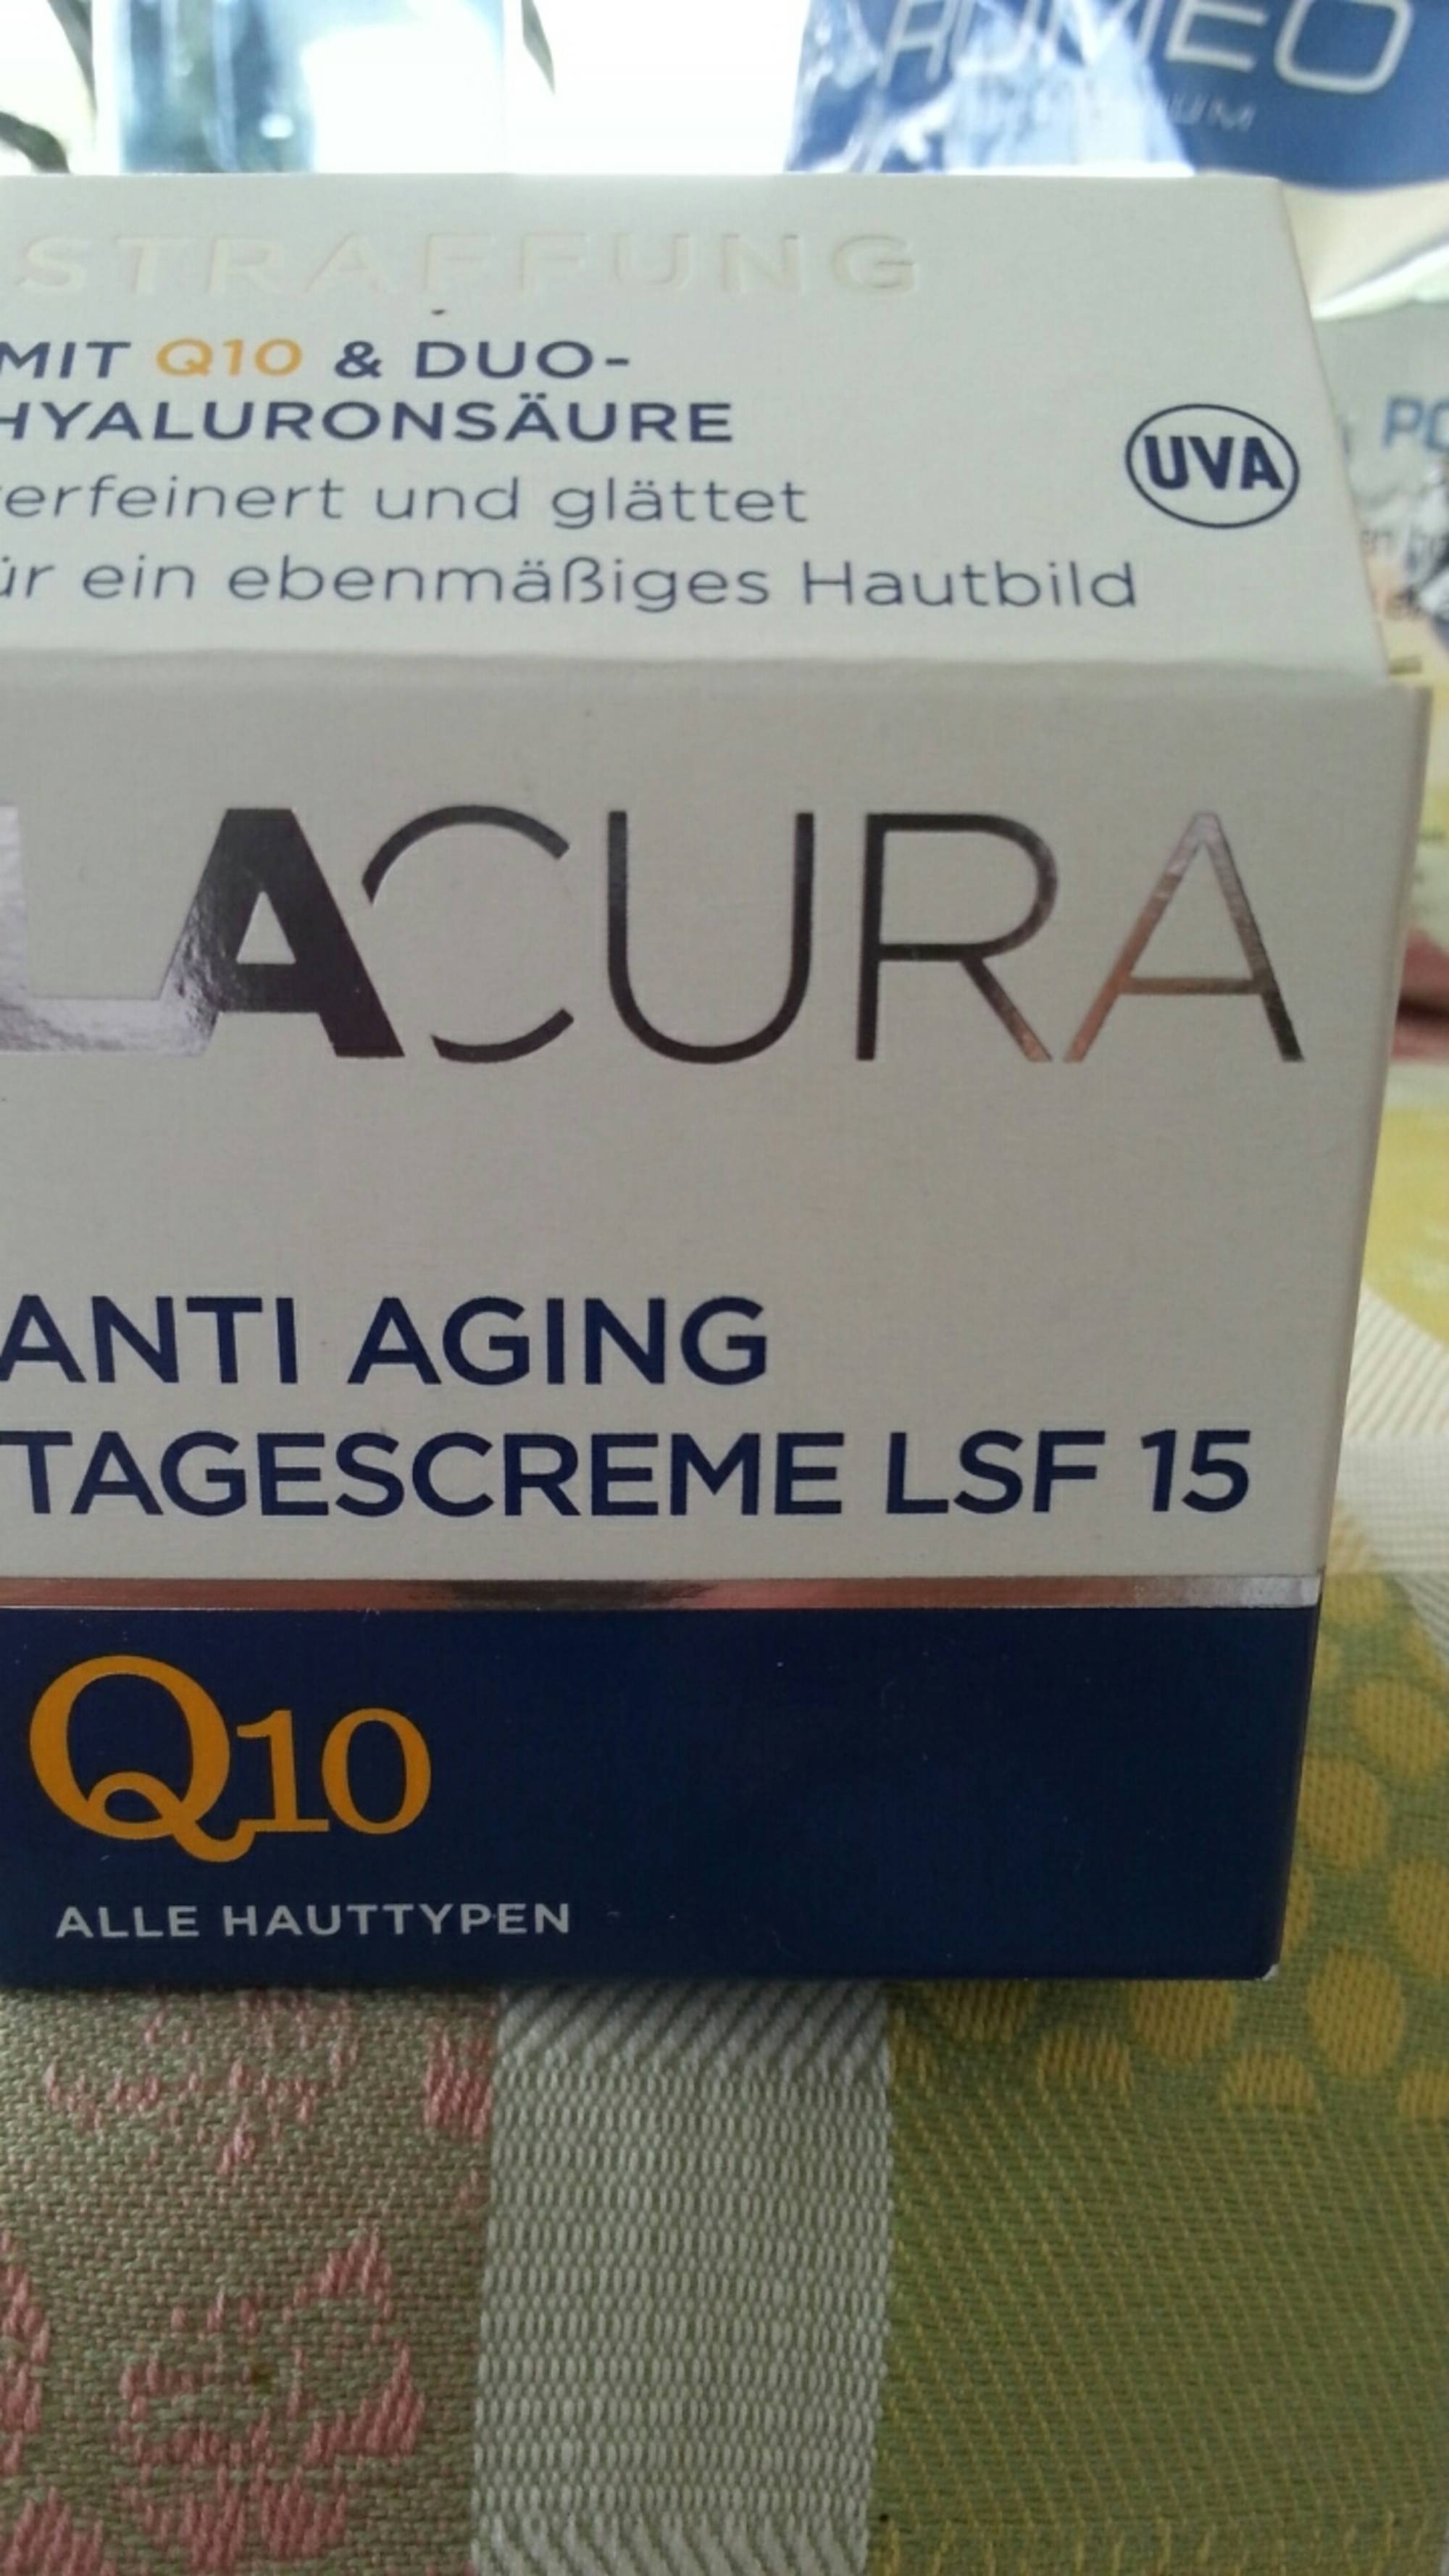 LACURA - Tagscreme LSF 15 - Anti-aging